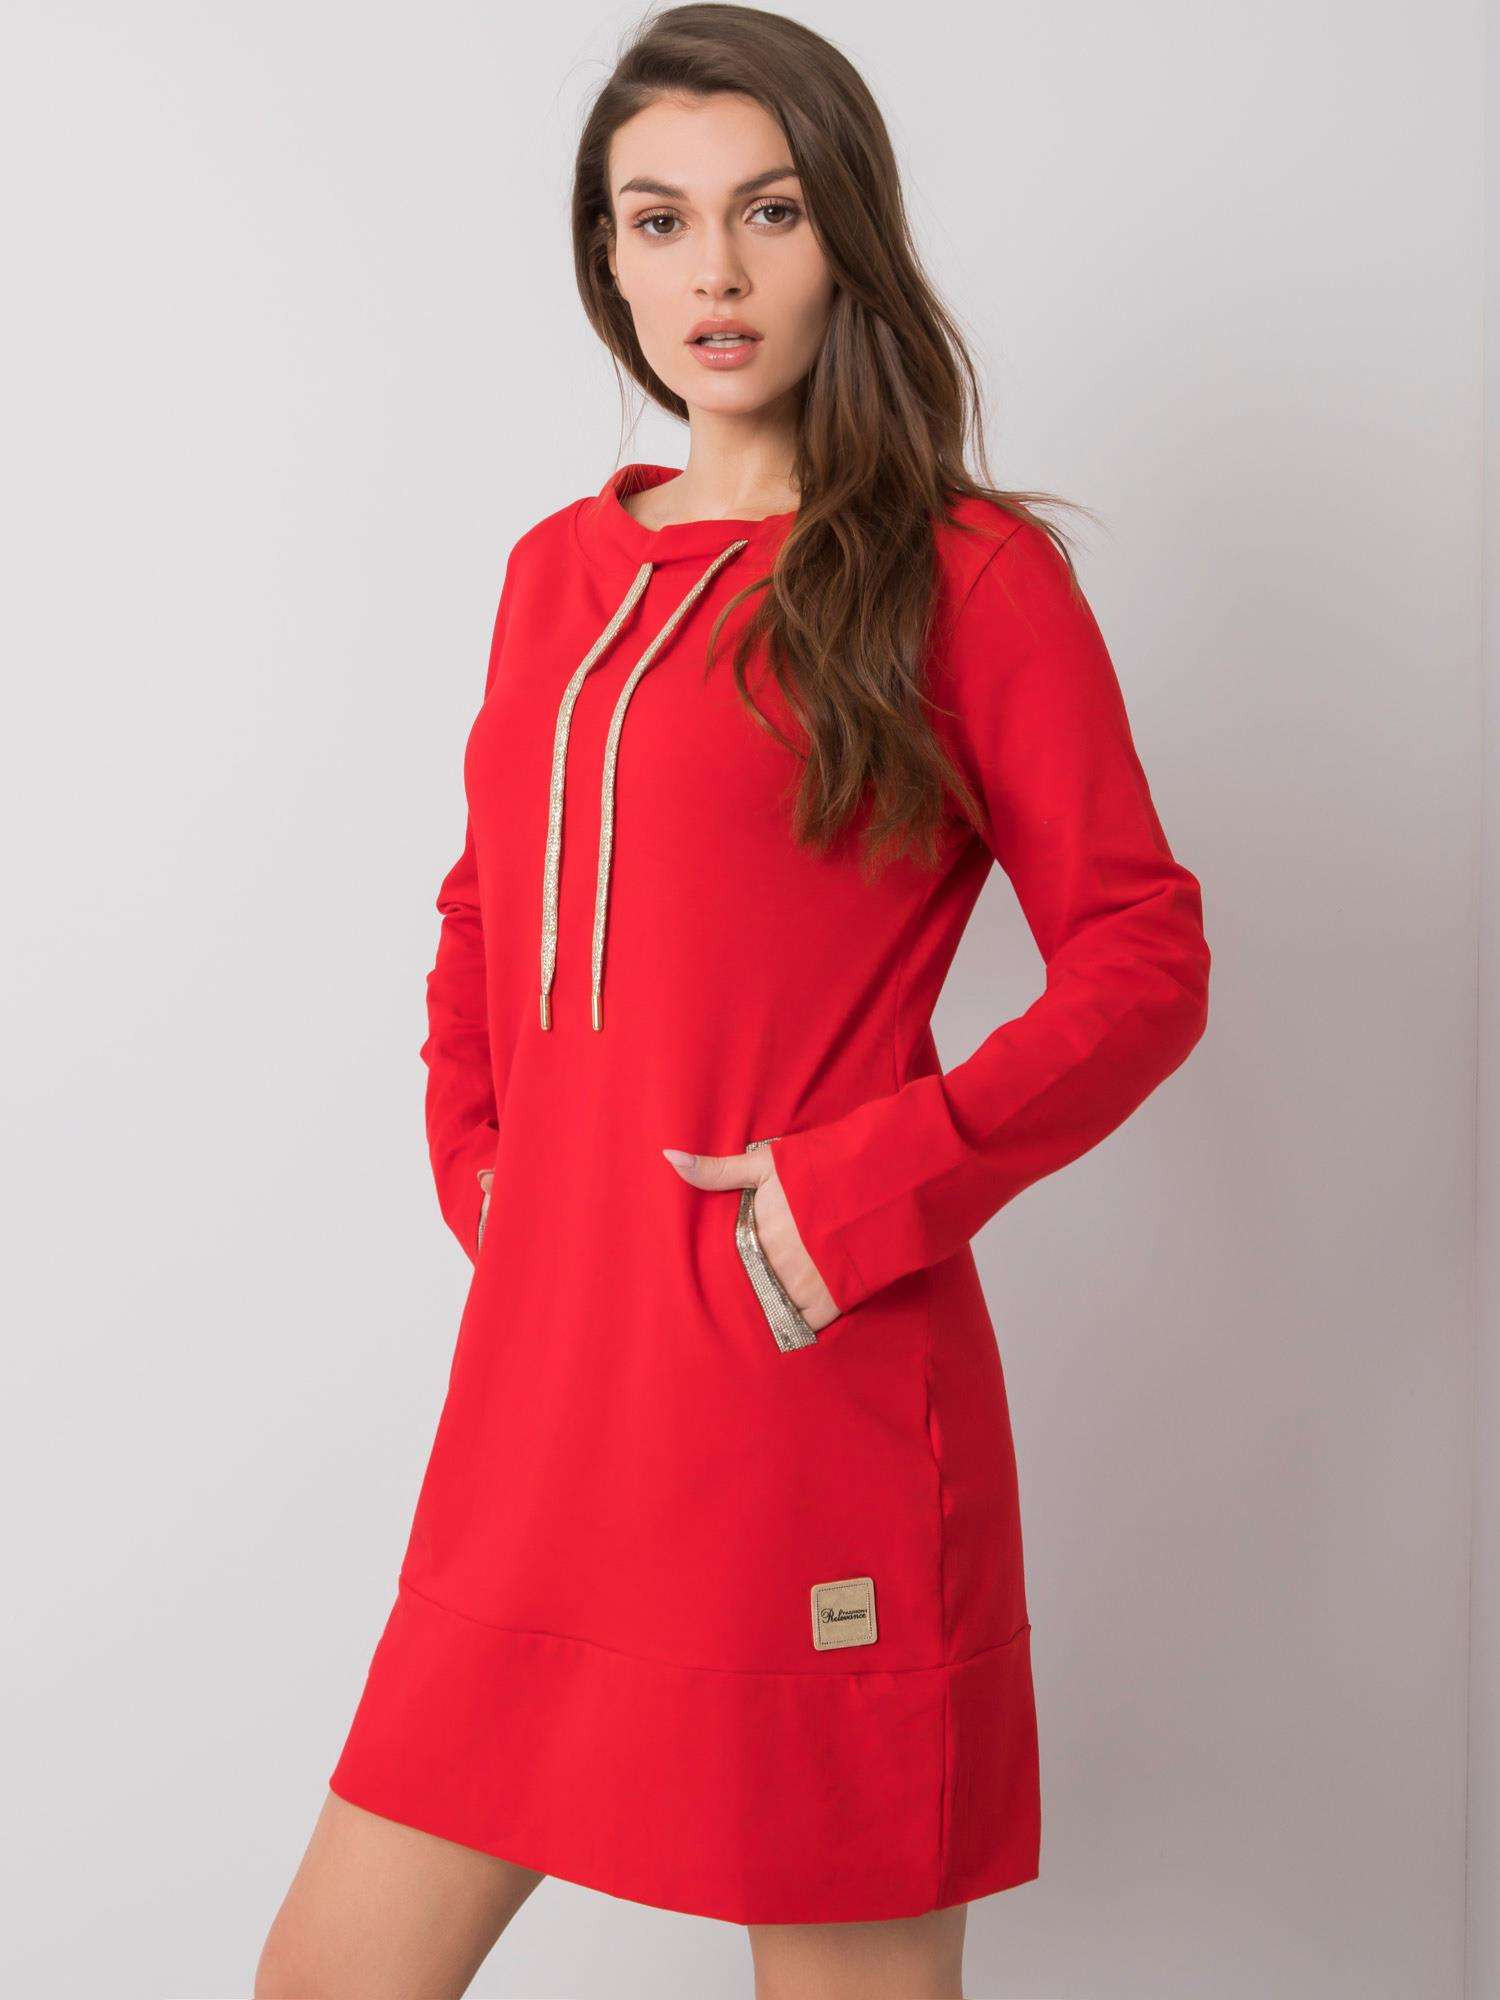 Dámské šaty RV SK 6067.15x Červená - FPrice červená L/XL